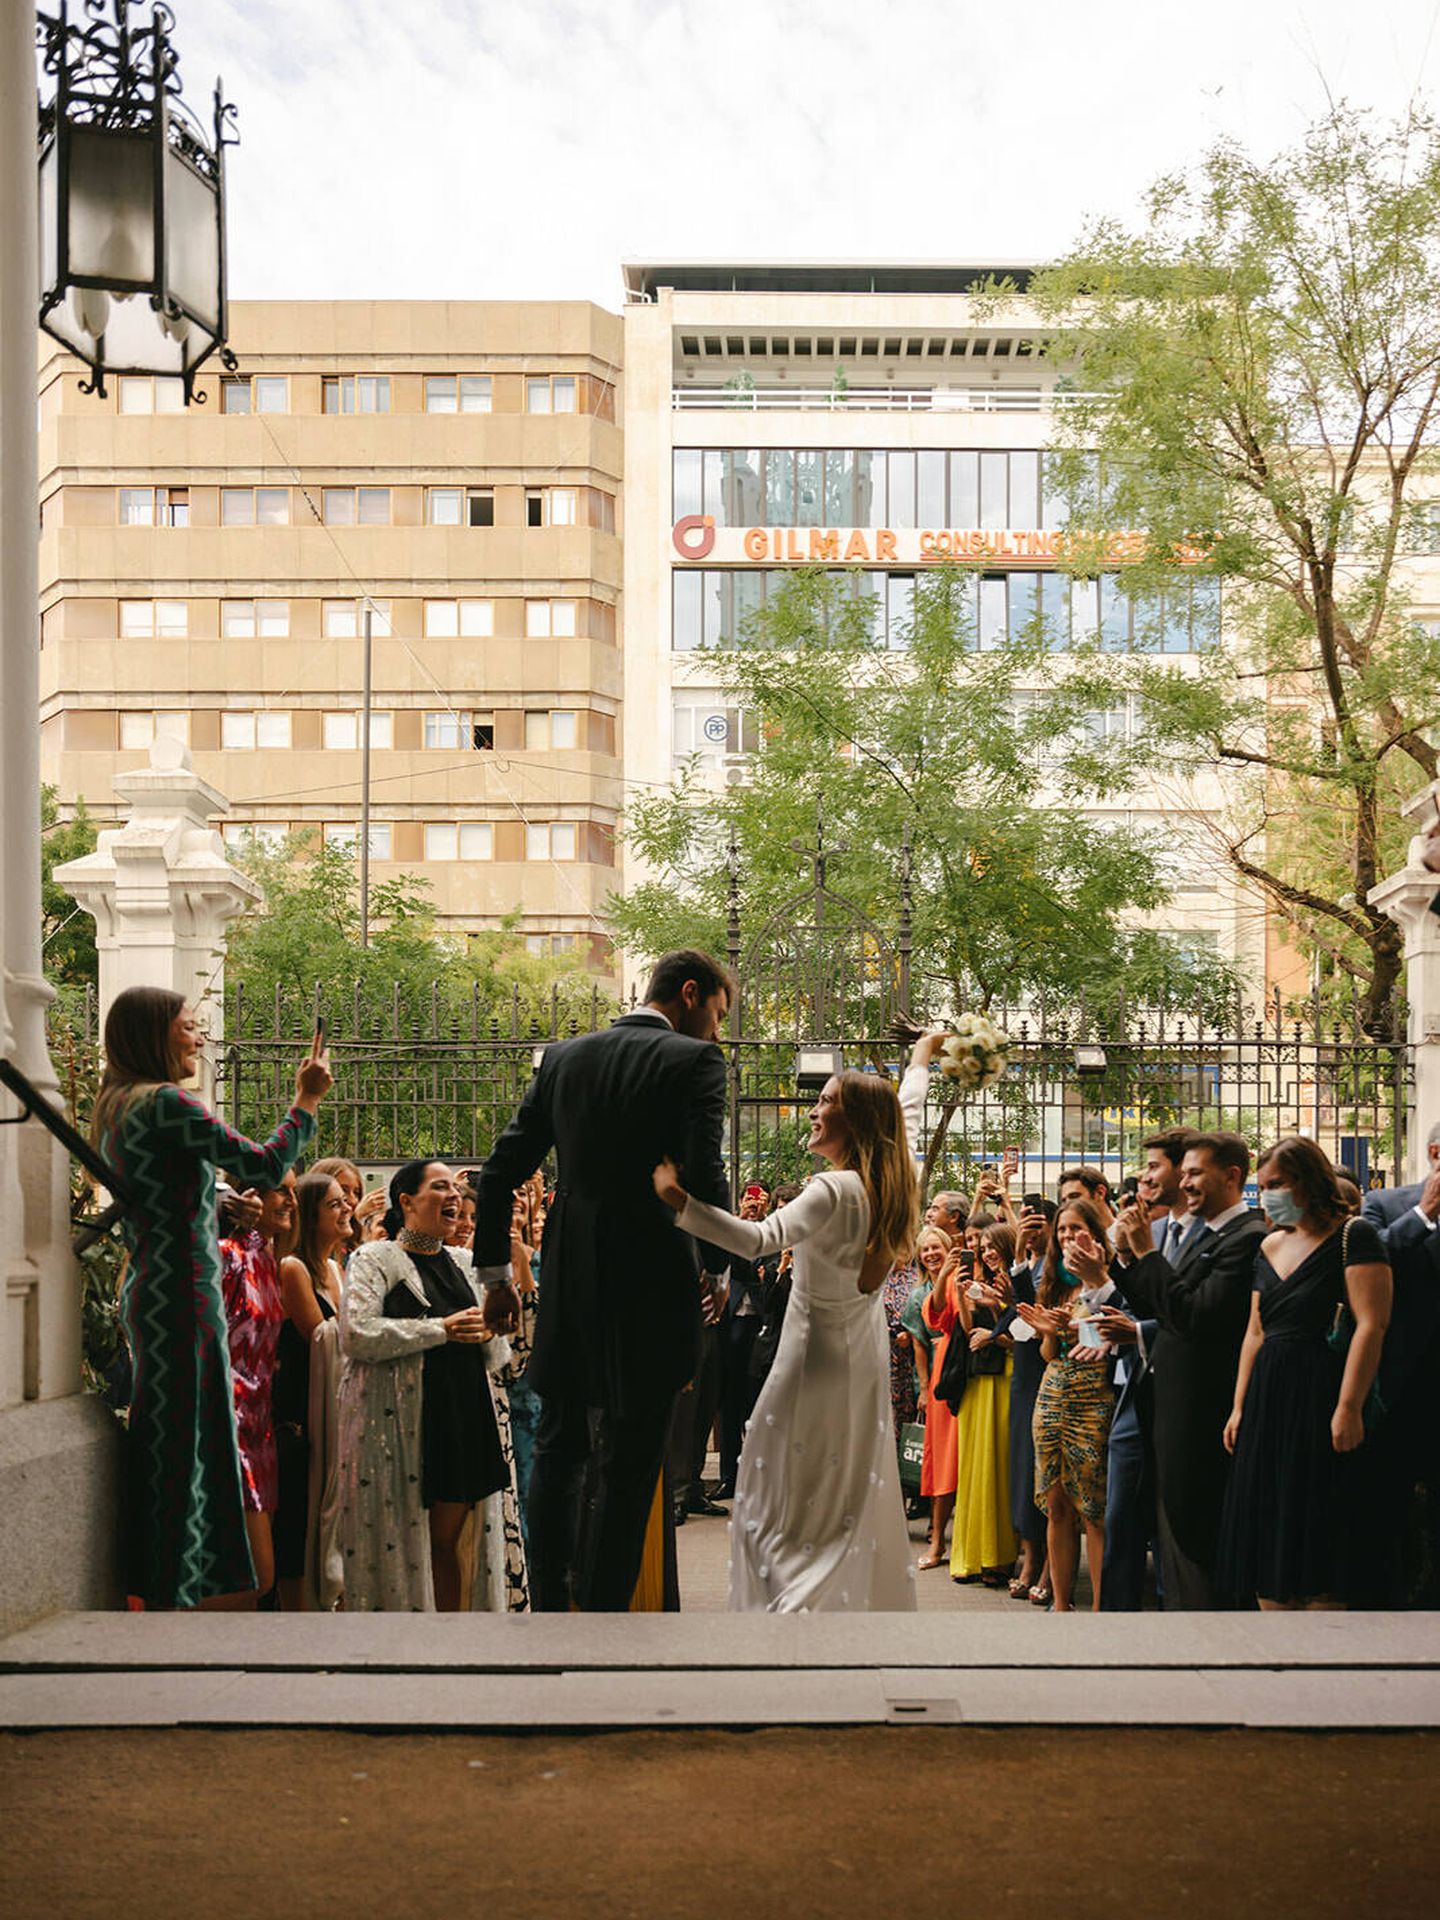 La boda de Lucía en Madrid. (Olea Photo)